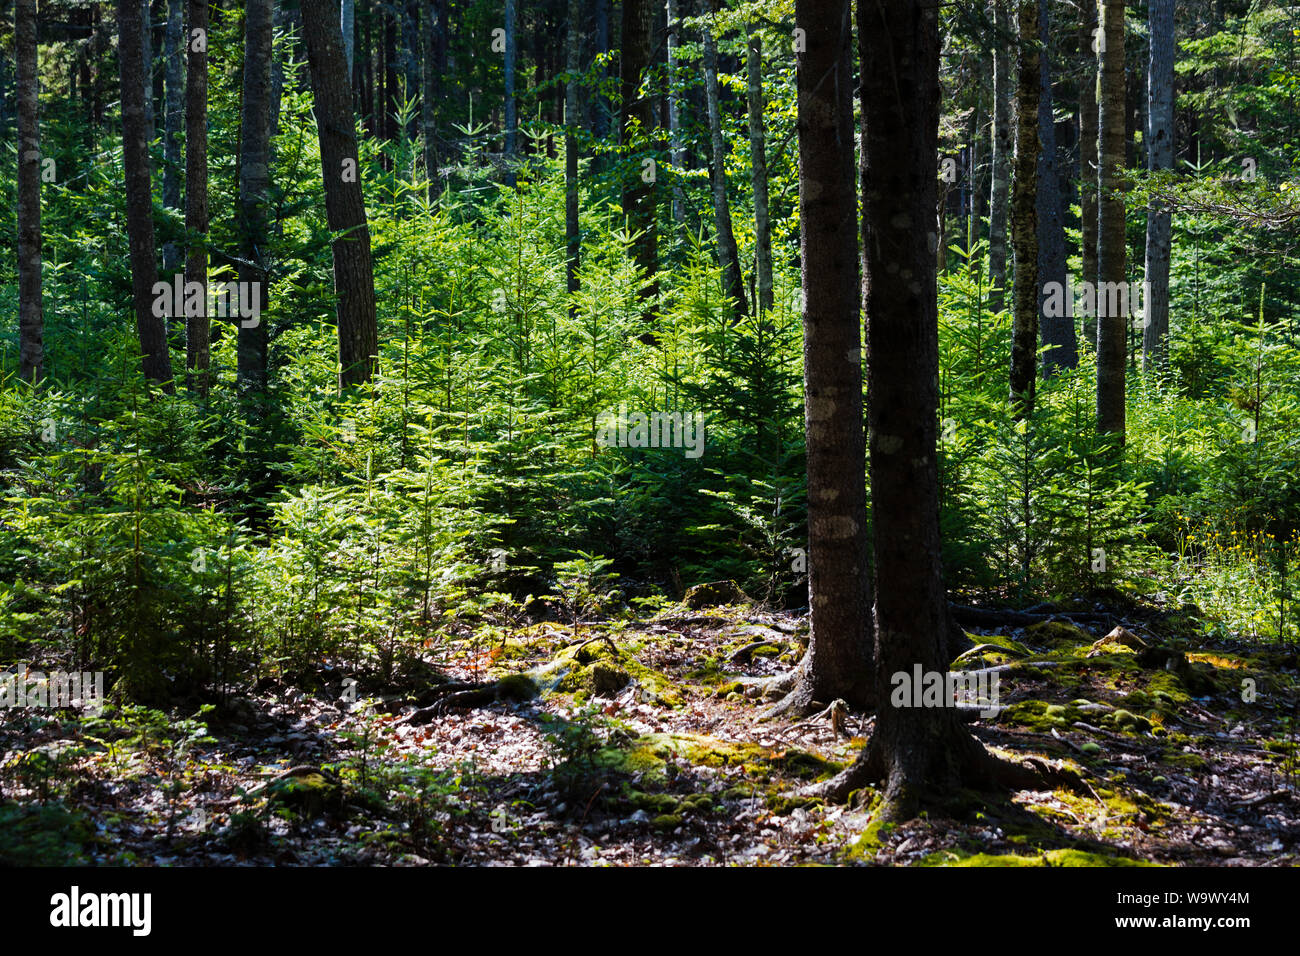 Nadelbäume im Wald auf WÜSTE INSEL - ACADIA NATIONAL PARK, Maine gewachsen Stockfoto